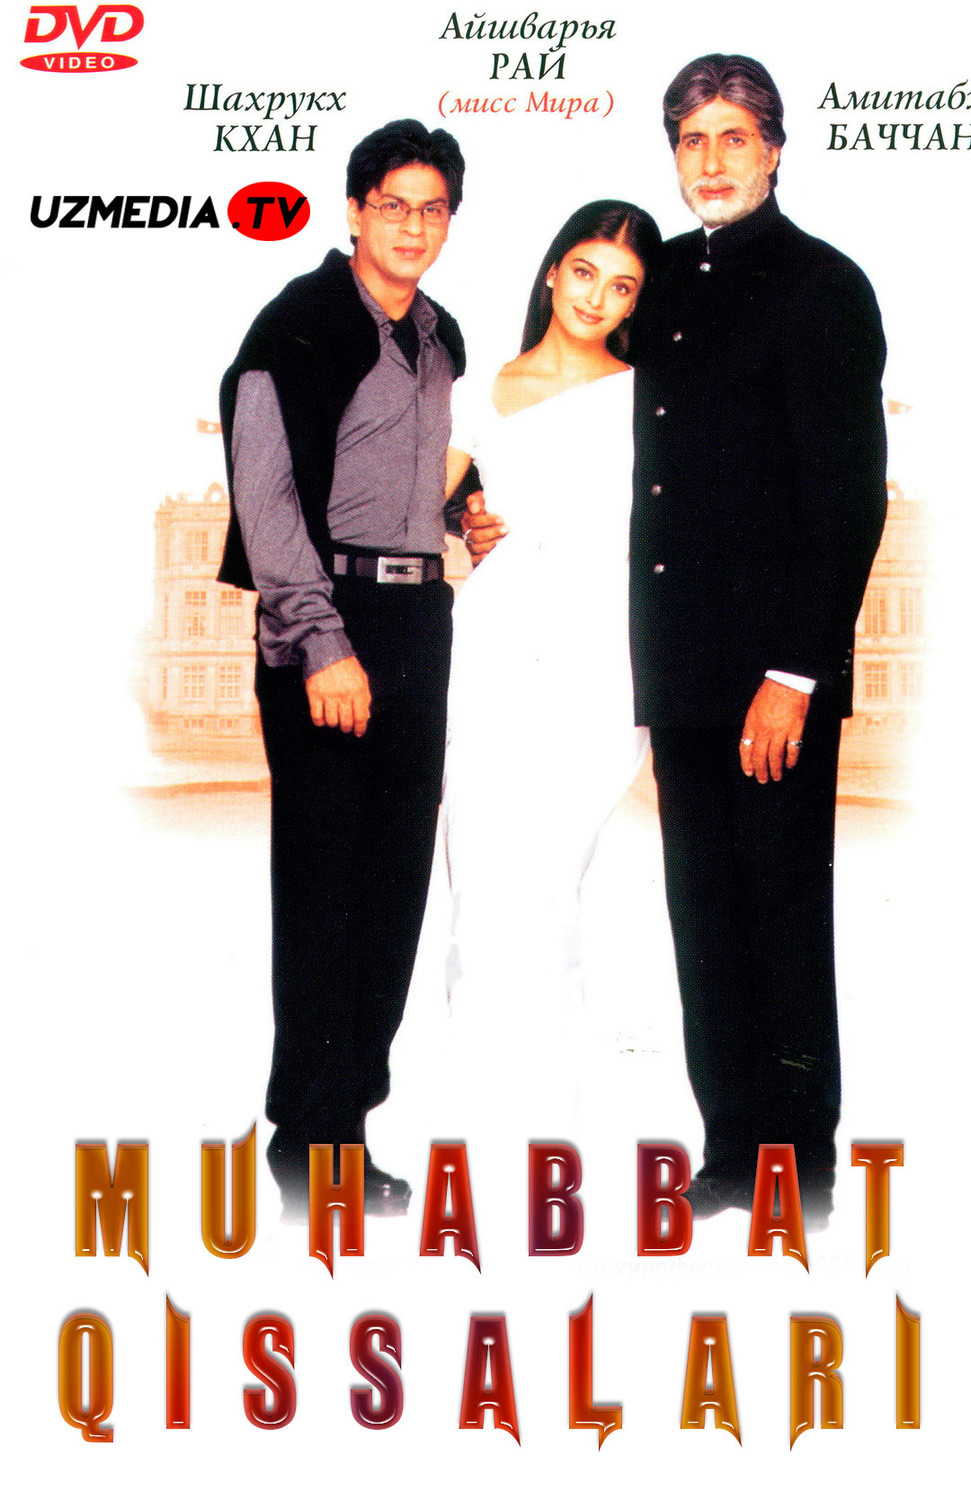 Muhabbat / Muxabbat qissalari Hind kino Uzbek tilida O'zbekcha tarjima kino 2000 Full HD tas-ix skachat